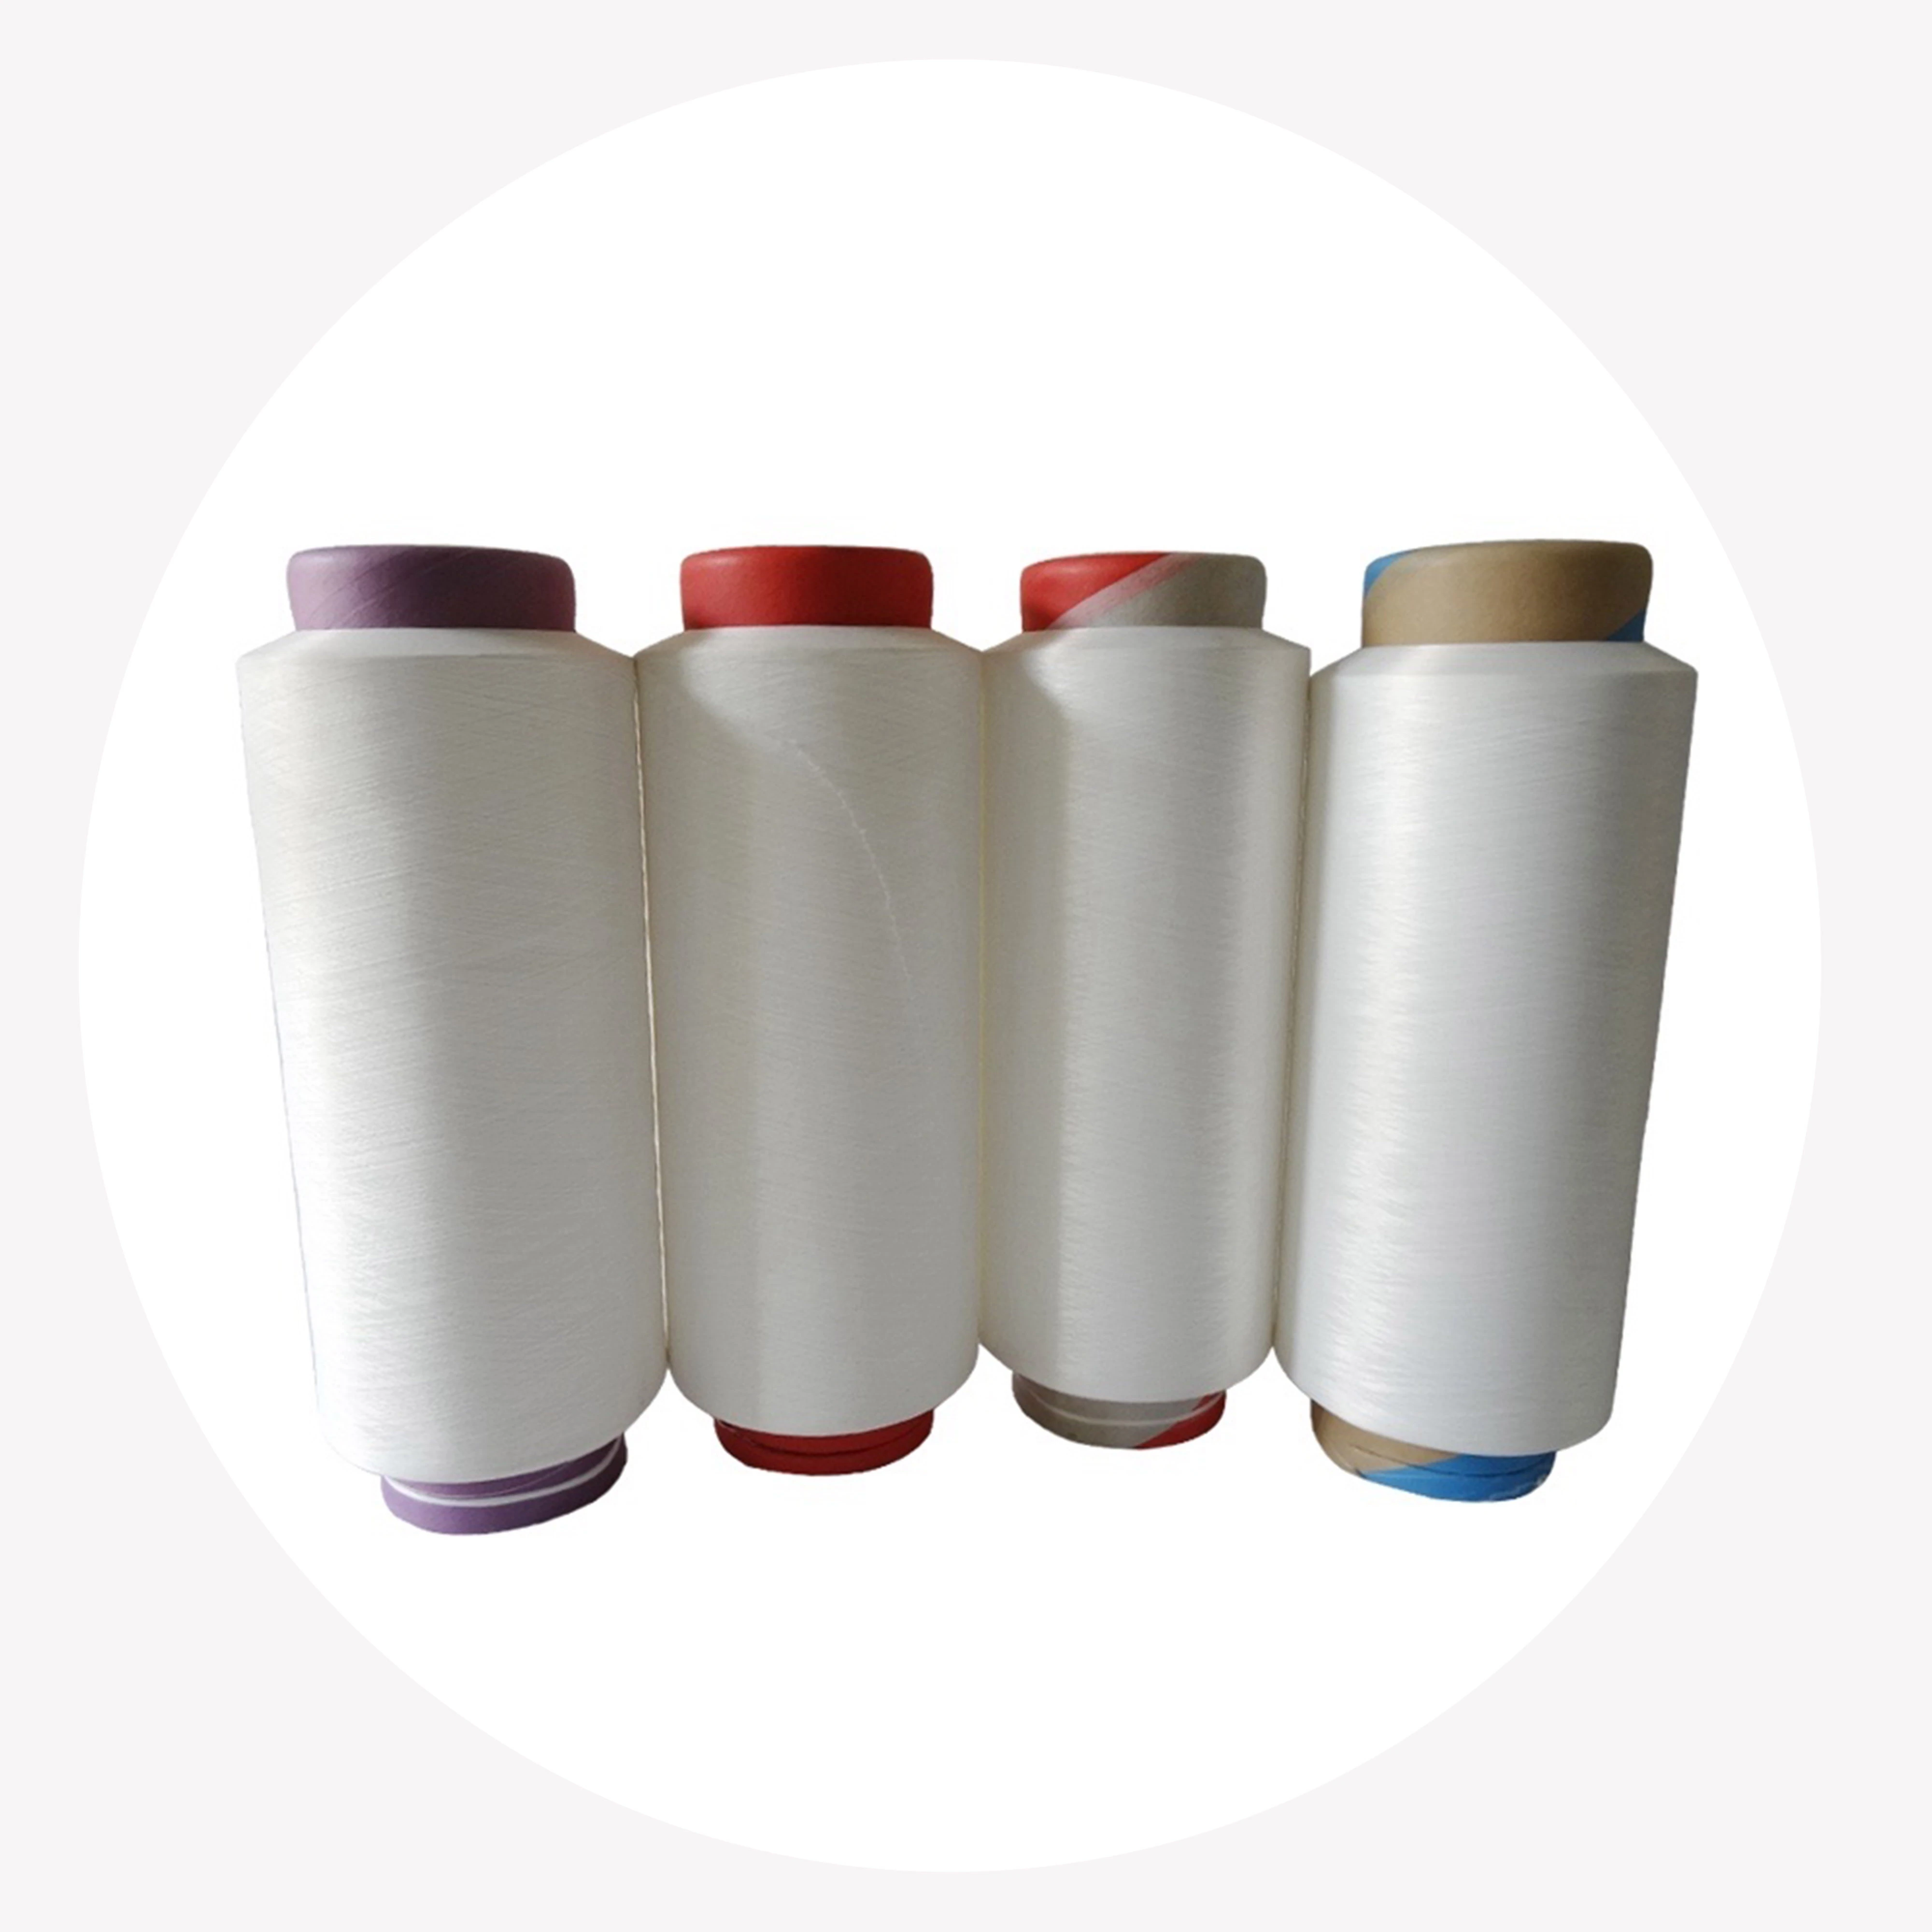 DTY 100% Nylon 6 Textured Yarn Price of nylon per kg